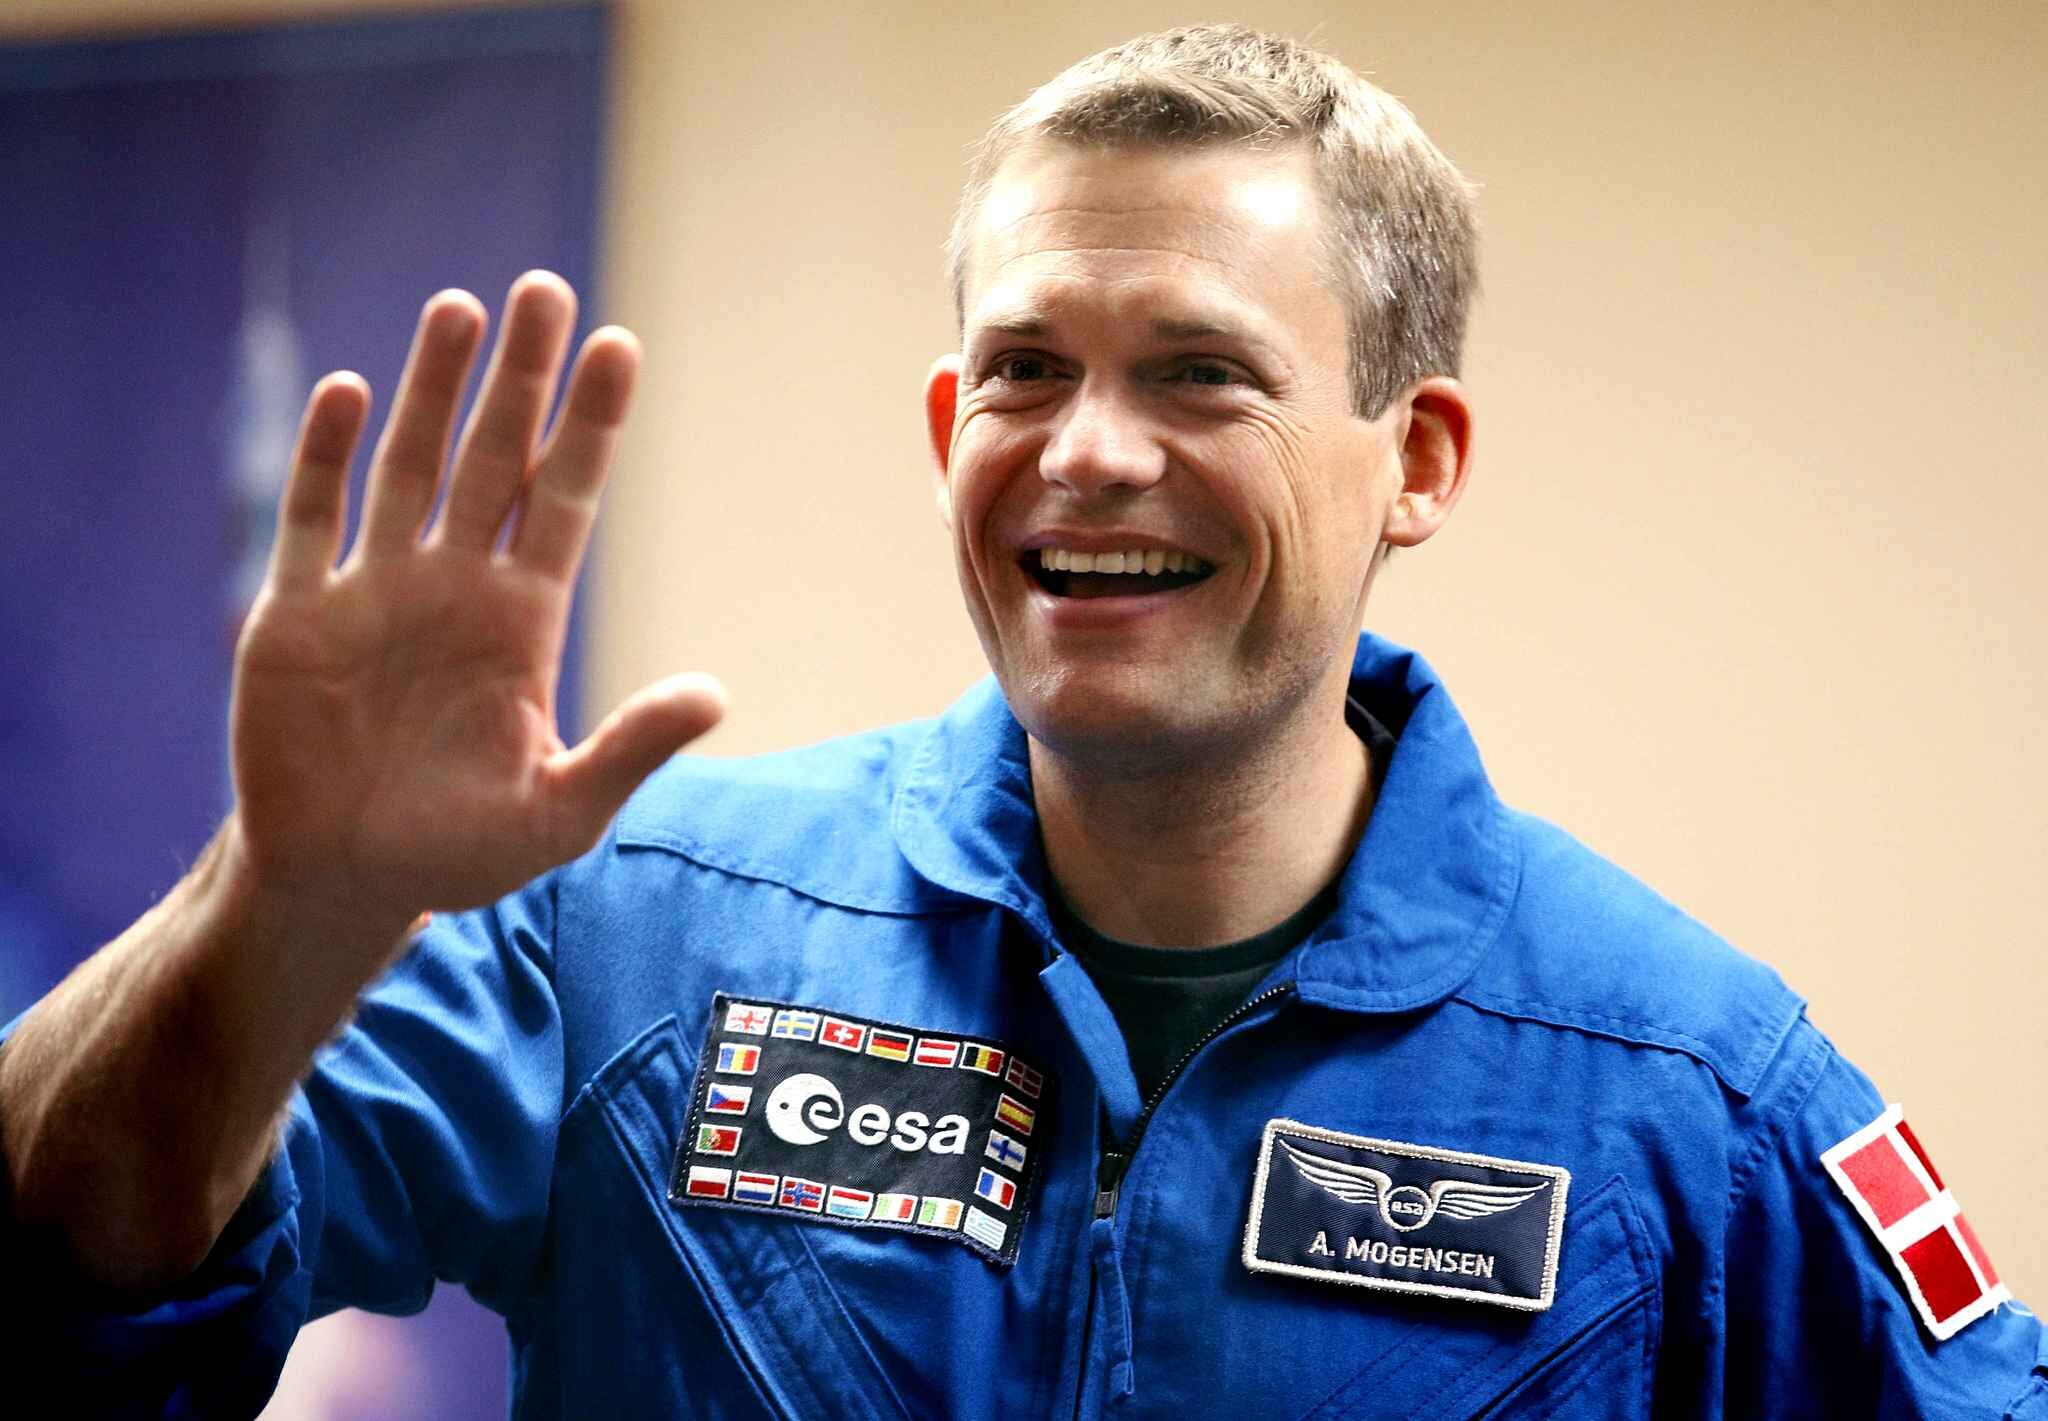 Le premier astronaute danois de l'histoire est arrivé à bord de l'ISS avec des figurines Lego